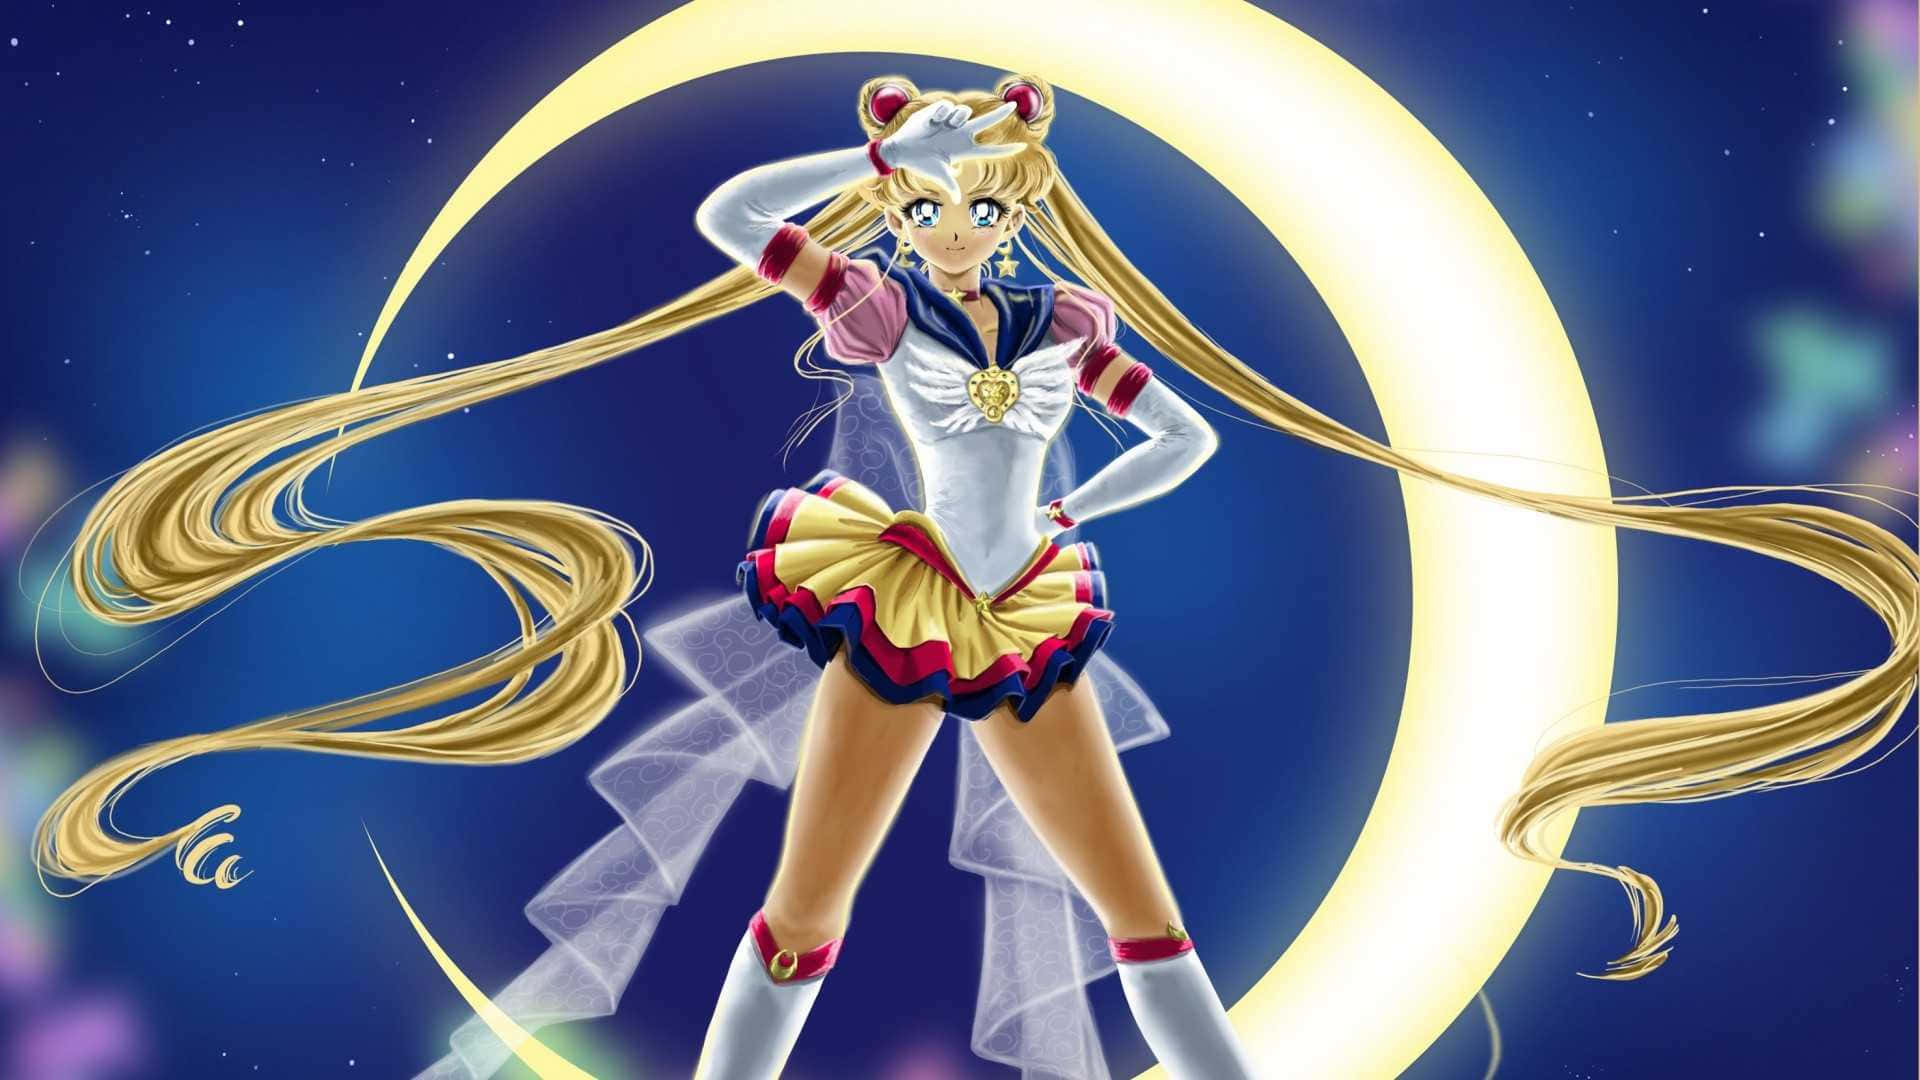 Dielegendäre Heldin Der Liebe Und Gerechtigkeit, Sailor Moon